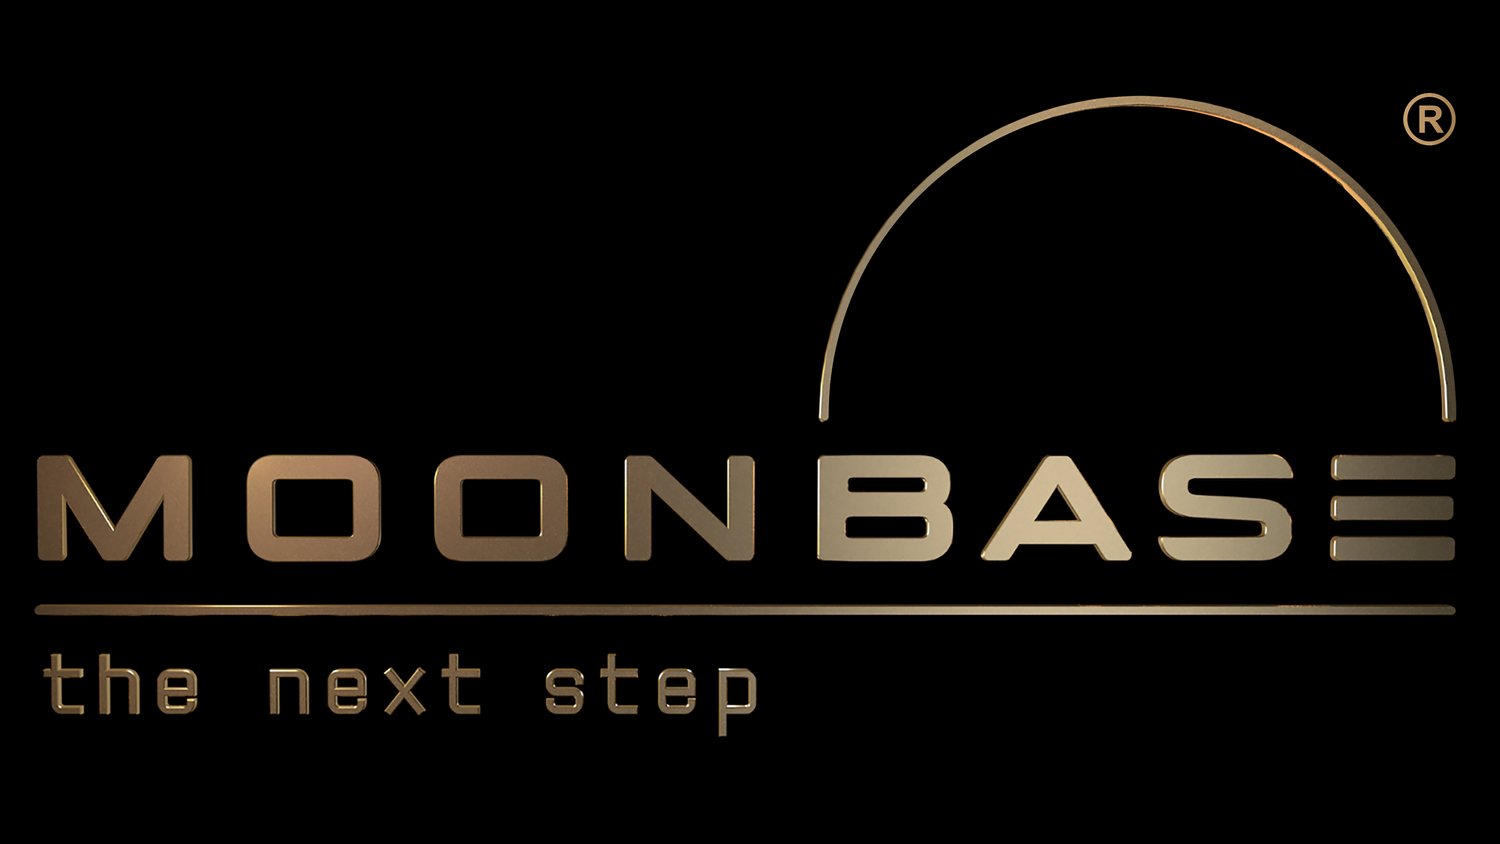 Moonbase: the next step